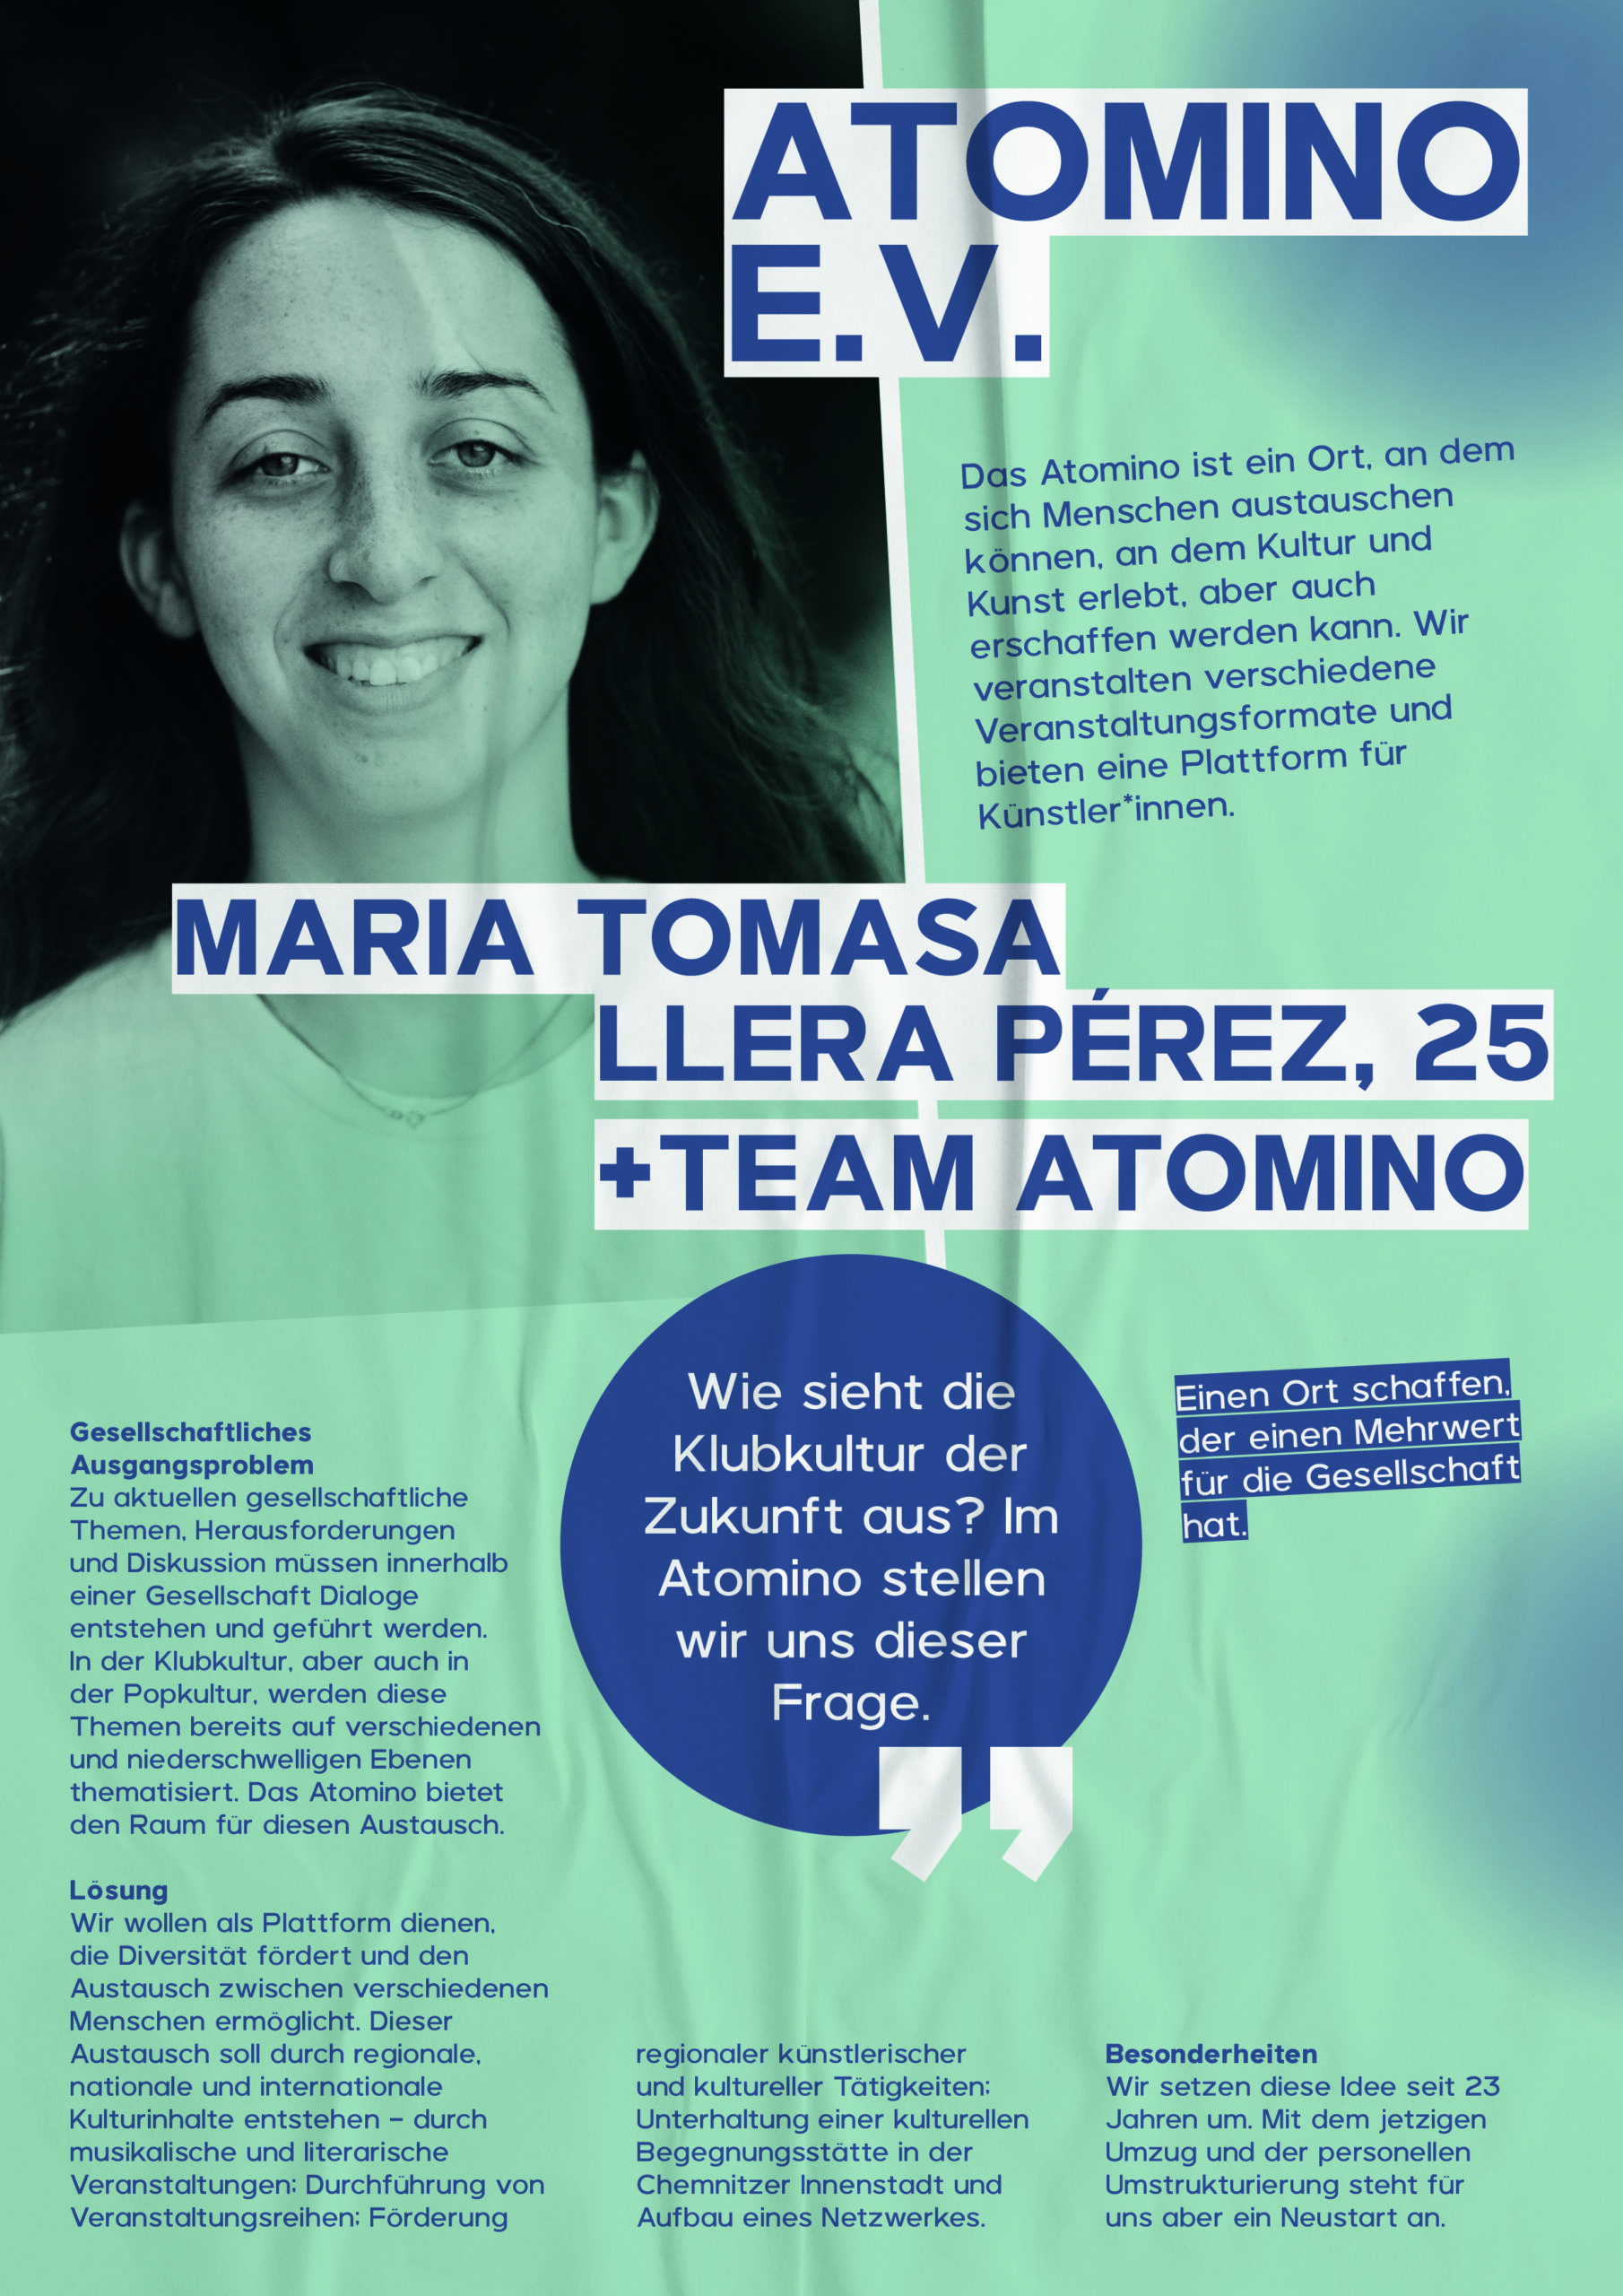 Maria Tomasa Llera Pérez, 25 und Team Atomino mit dem Atomino e.V. Sie wollen mit ihrem Club einen Ort schaffen der einen Mehrwert für die Gesellschaft hat.